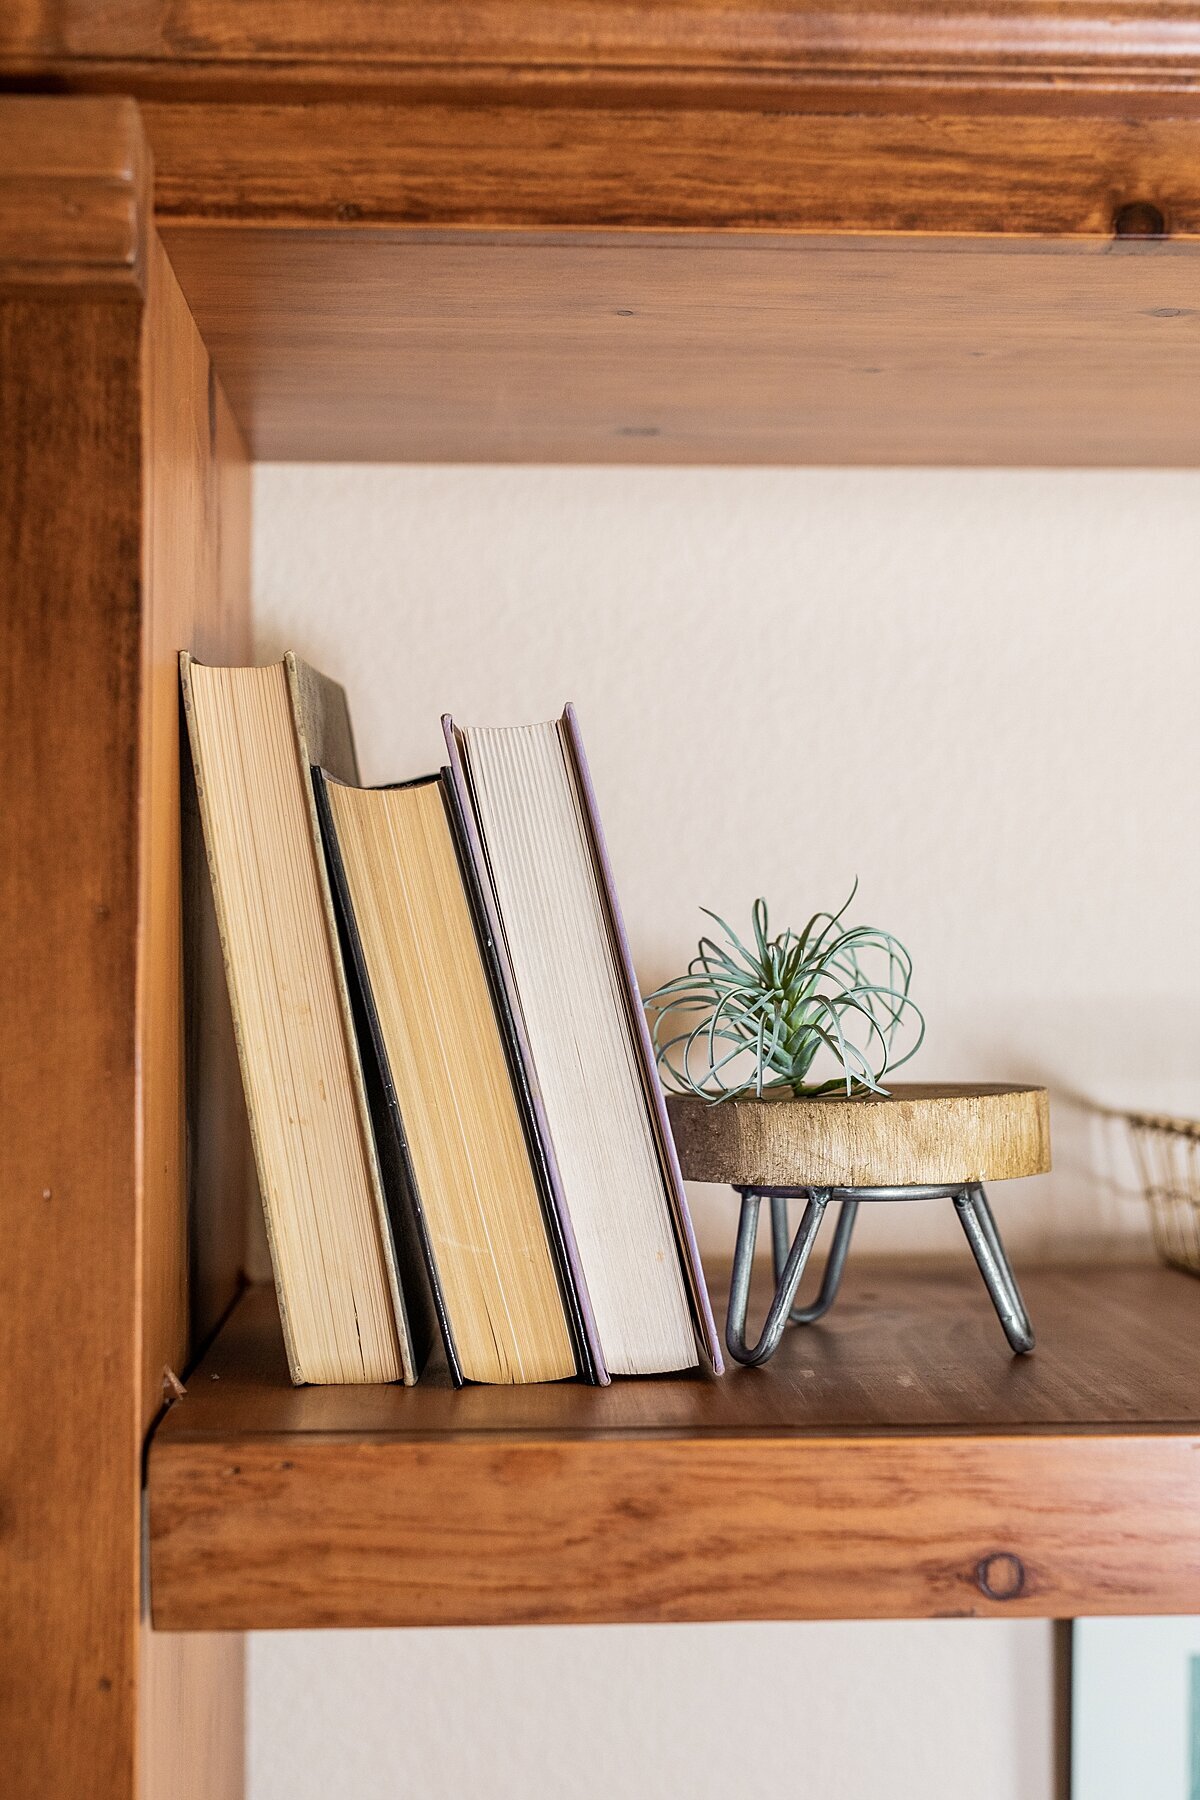 Books and plant on shelf  designed by interior Designer, Natalie Barnas in Oceanside, California.